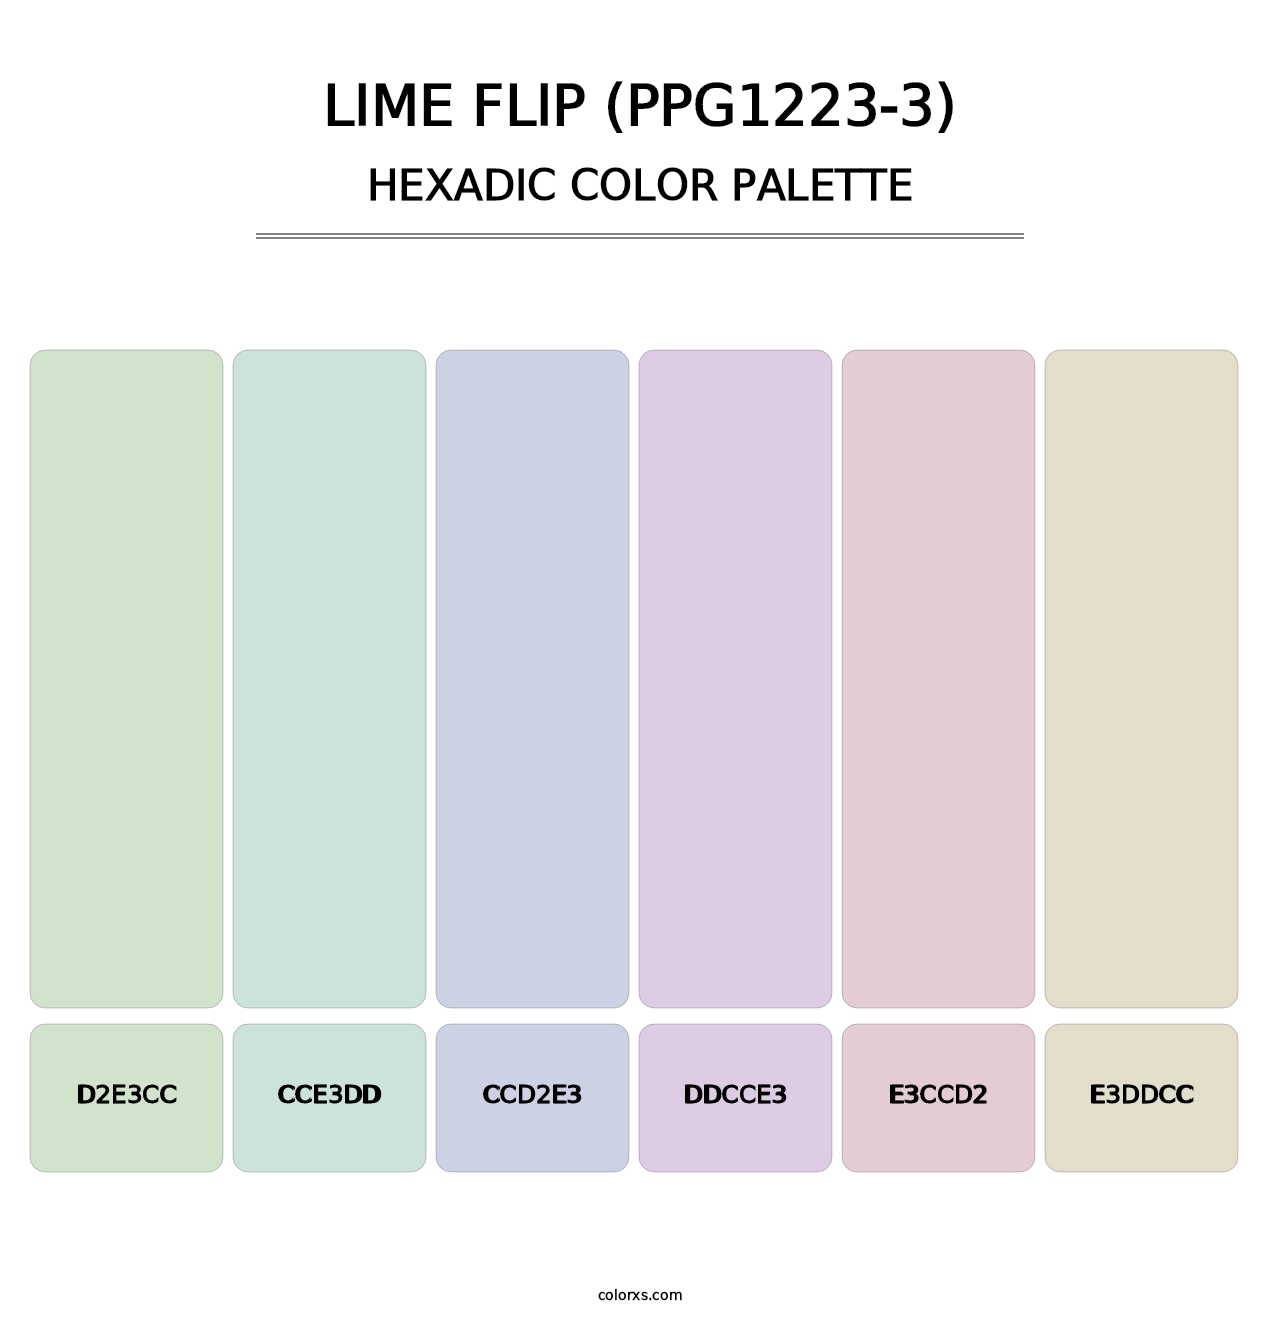 Lime Flip (PPG1223-3) - Hexadic Color Palette